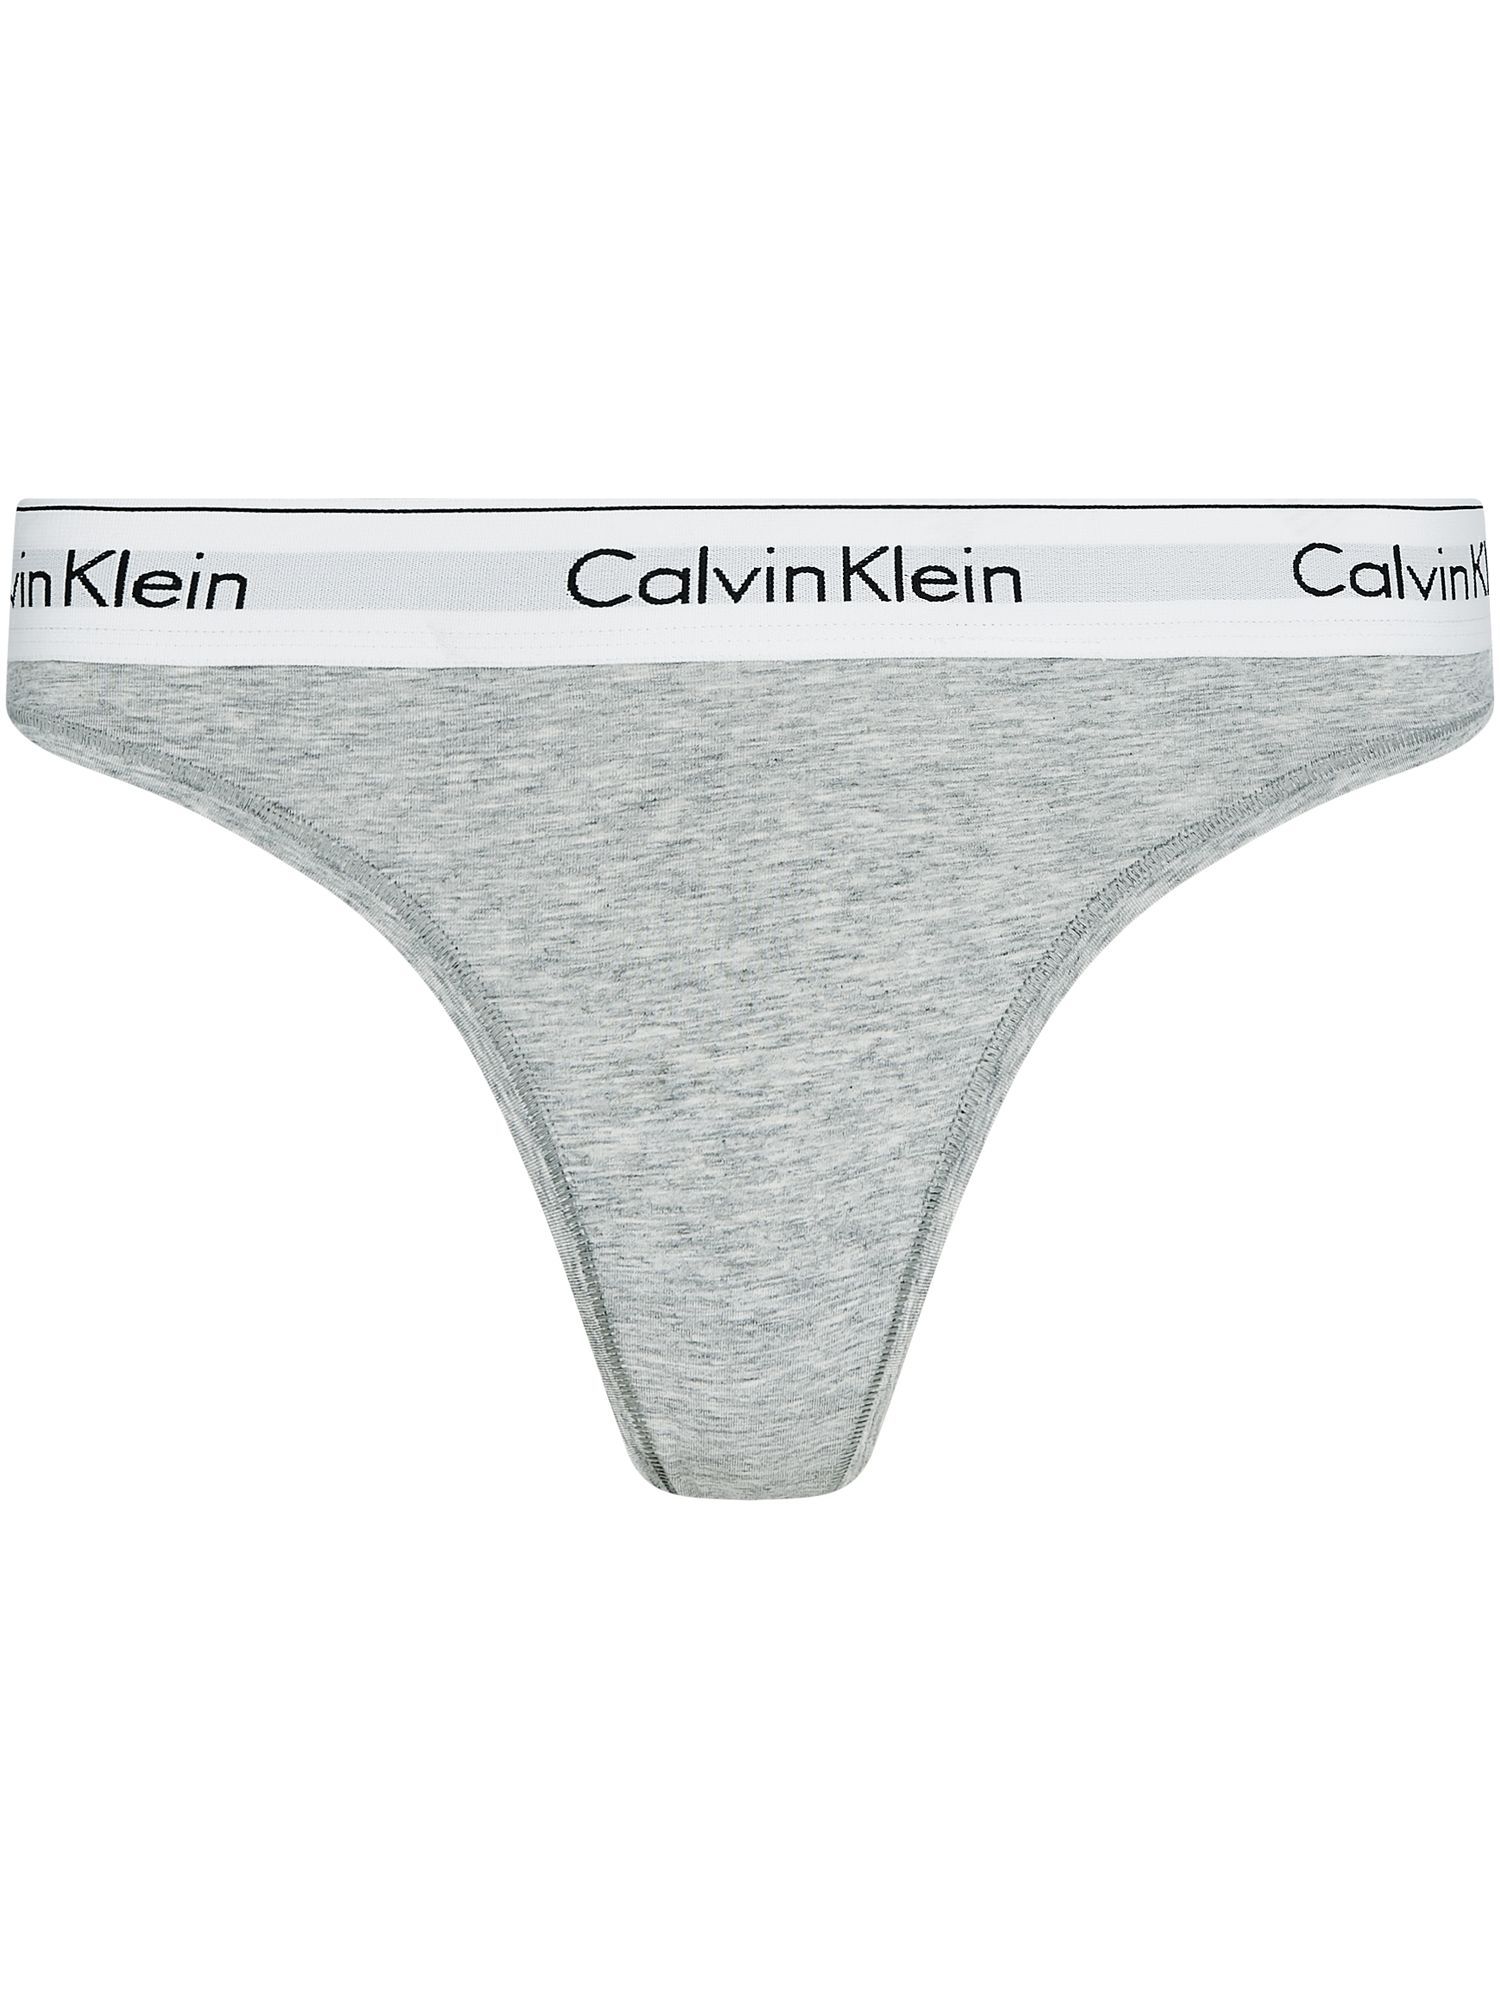 Klein Underwear Baumwolle Thong | Kaufland.de